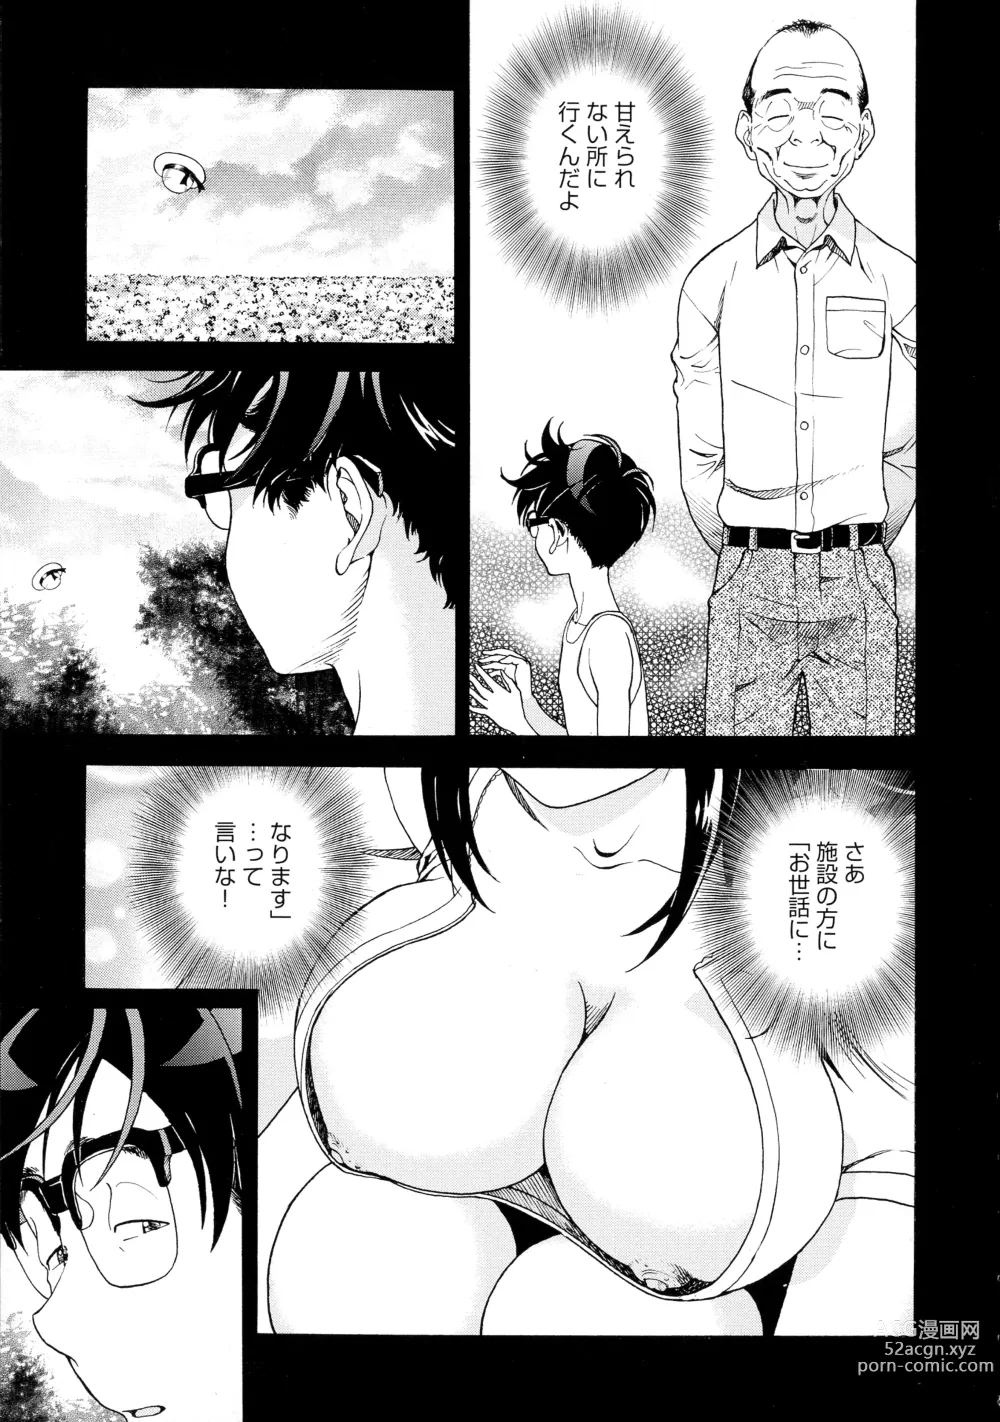 Page 7 of manga Bokinbako 2